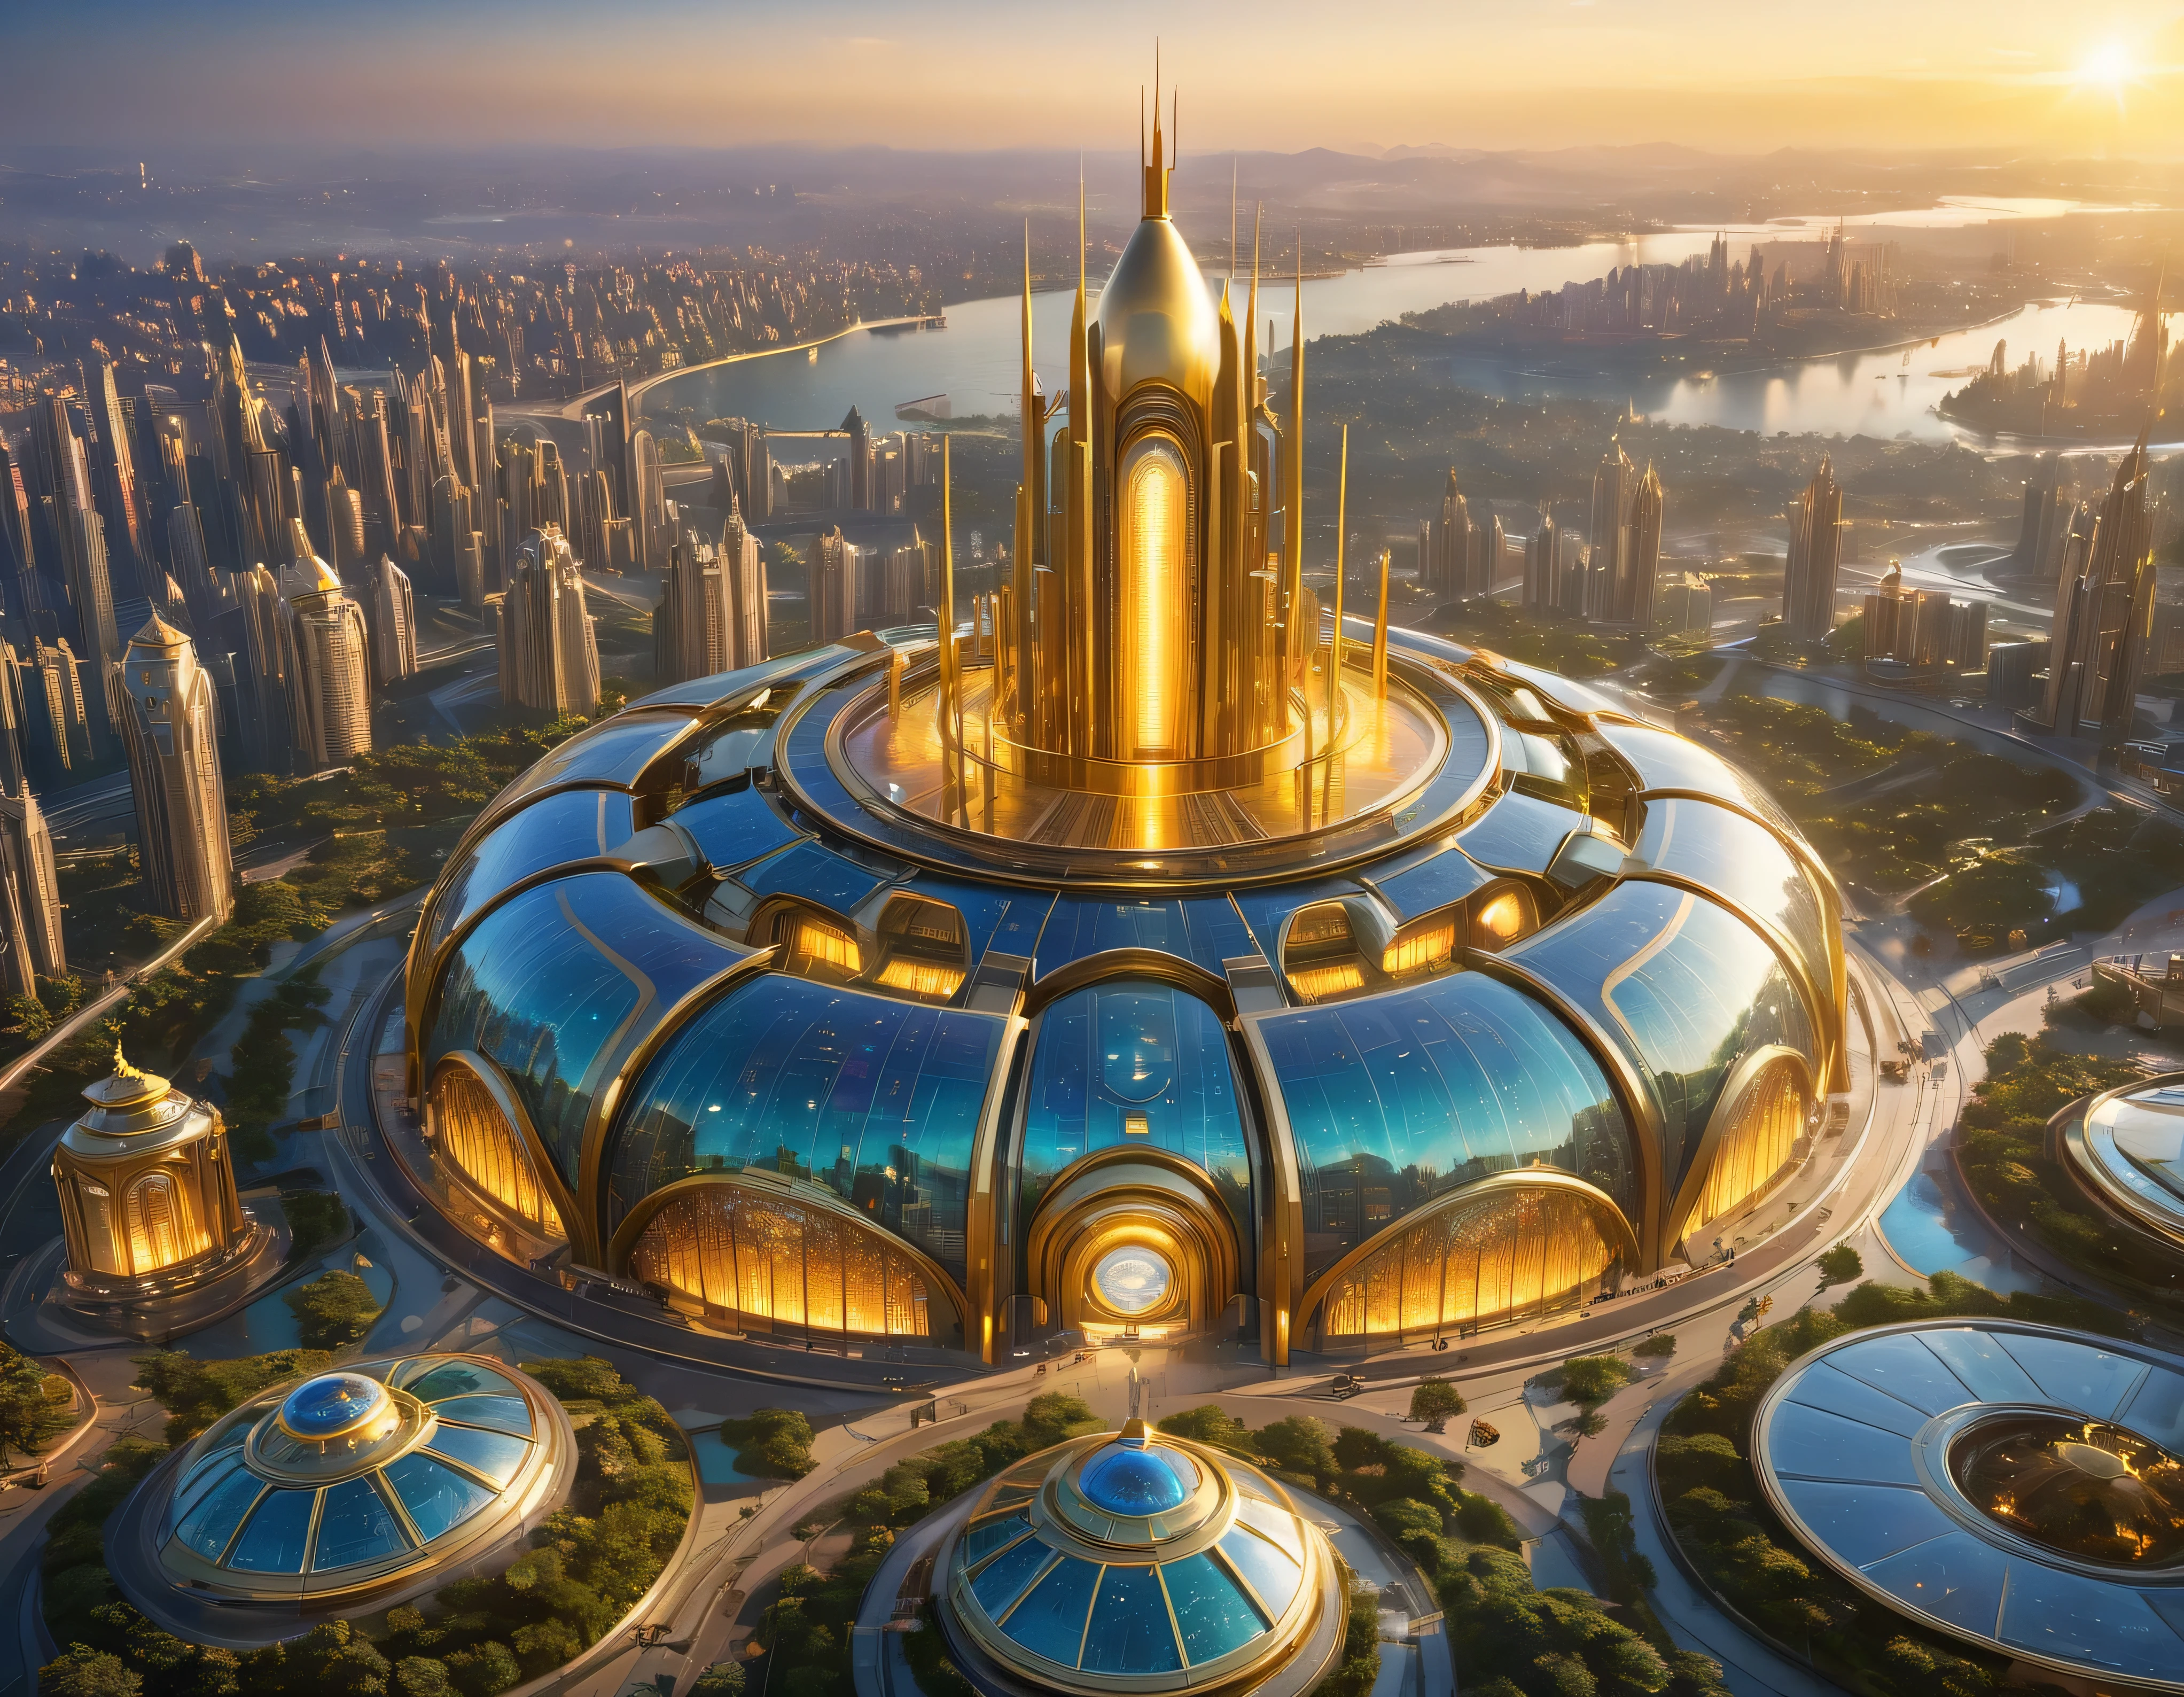 (黃金時段燈光), 特大城市, 科幻小說想像世界的大都市 , 類似未來主義的迪士尼樂園, 和最大的幻想, 巨大的建築物以及橢圓形和十二面體的摩天大樓由金屬和玻璃組合在一起，其中金色和彩色的照明廣告占主導地位。. 清晰的 8k 影像, (機器的複雜細節), 與許多建築物在一起.(頂級品質傑作).(逼真的影像), 直至背景的絕對清晰度